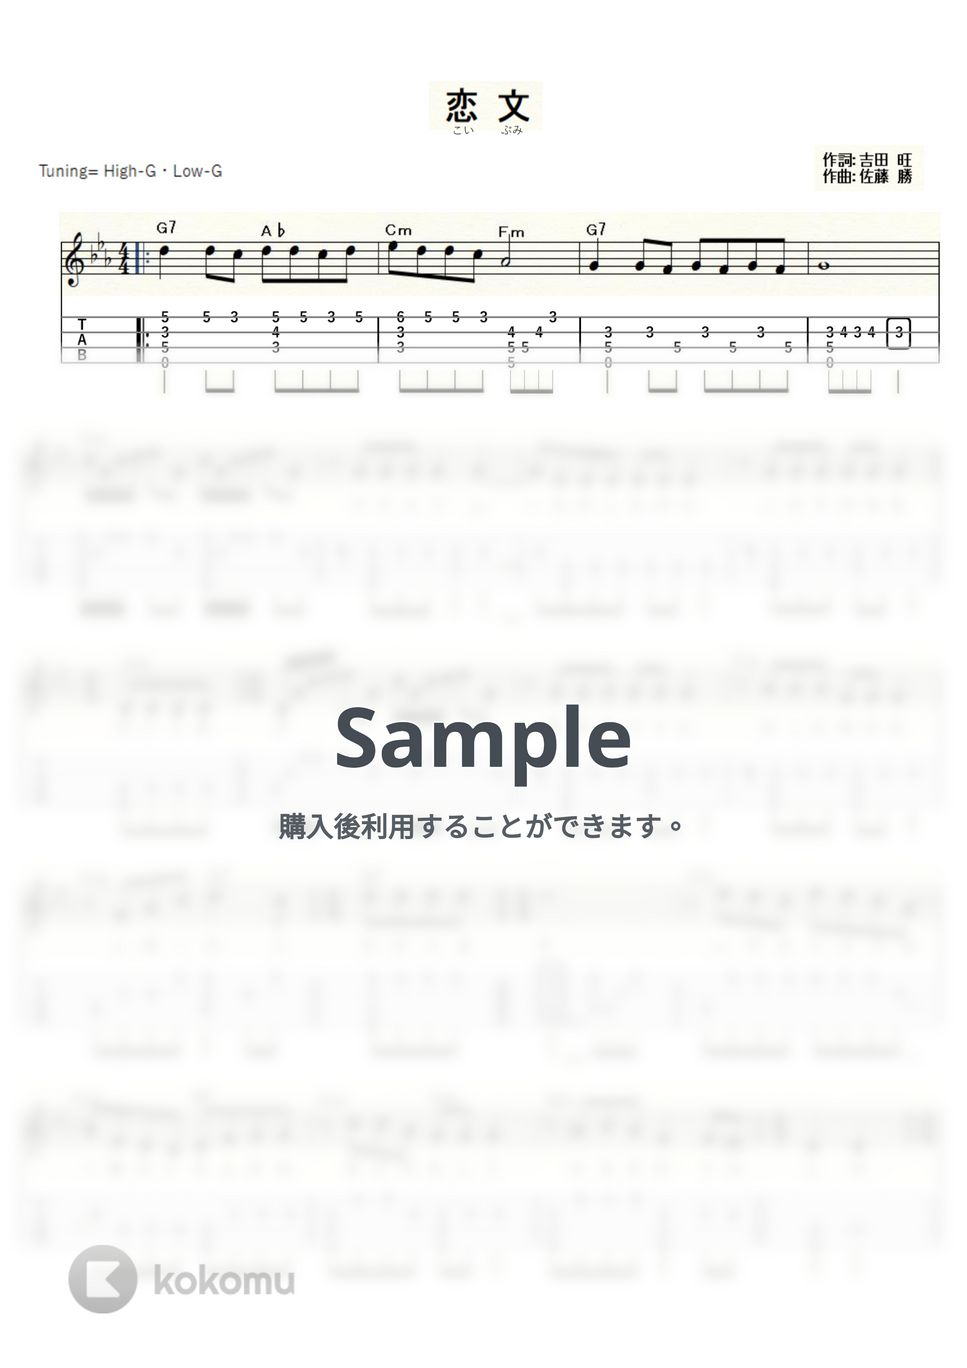 由紀さおり - 恋文 (ｳｸﾚﾚｿﾛ/High-G・Low-G/中級) by ukulelepapa